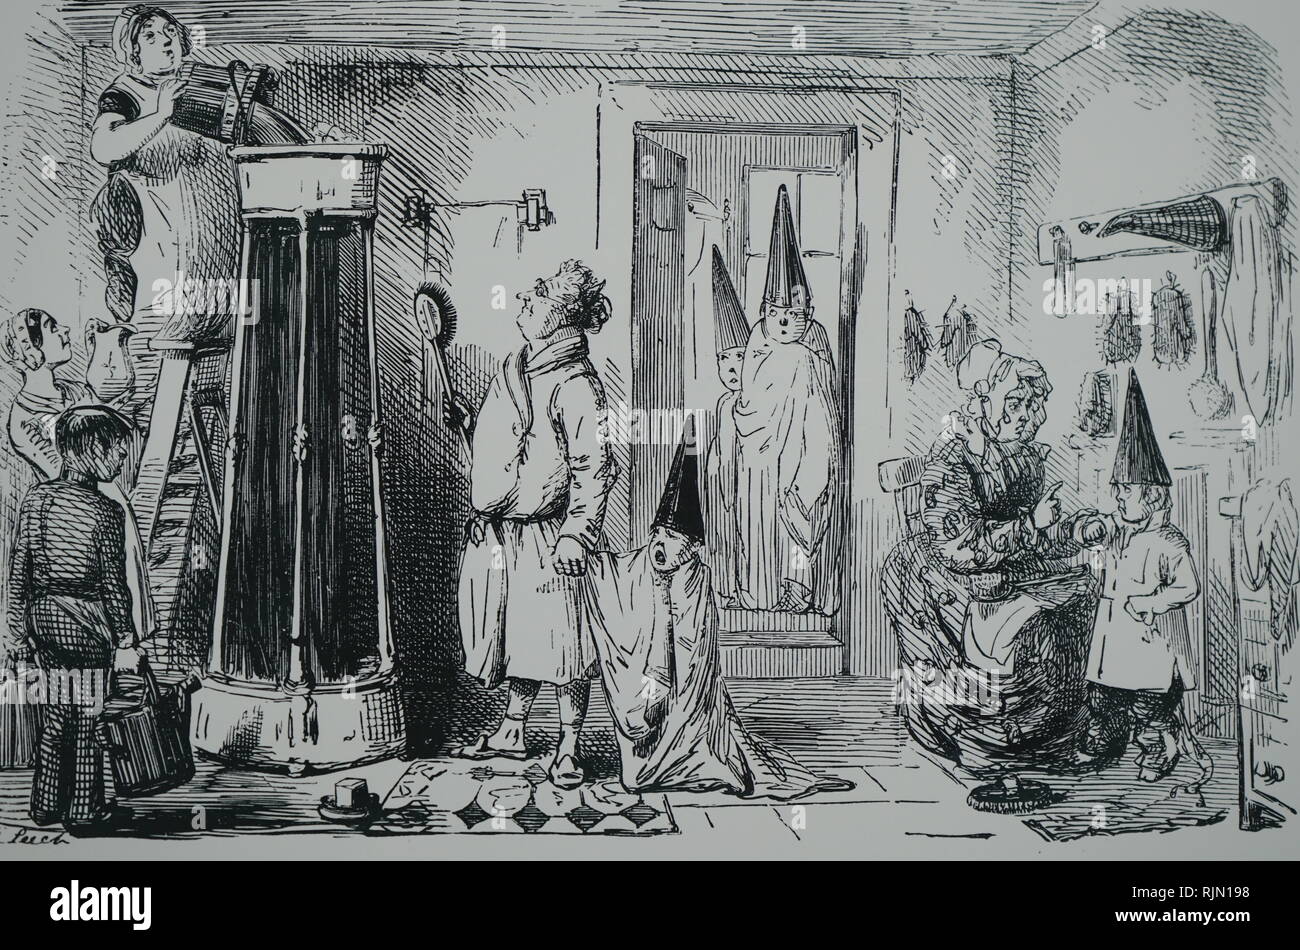 Ilustración mostrando un tipo común de showerbath portátil utilizado en la segunda mitad del siglo XIX. Los sombreros para niños son de tela impermeabilizada con cubierta de goma (Mackintosh). A partir de una colección de Sanguijuela de caricaturas publicadas en Punch entre 1842 y 1864 Foto de stock